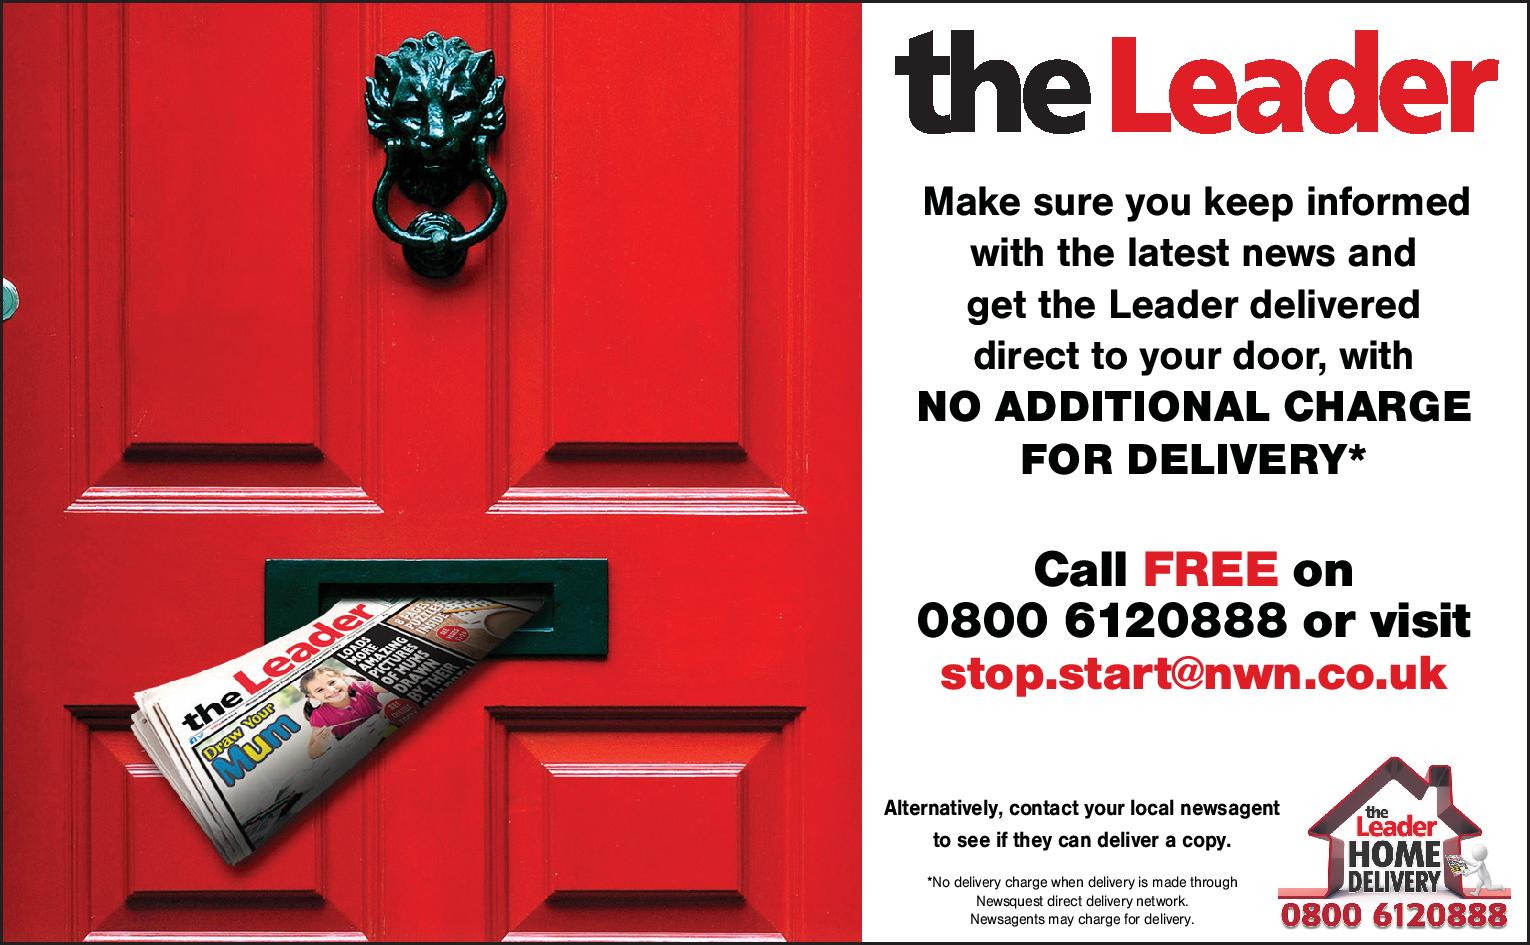 leaderlive.co.uk  the Leader Home Delivered